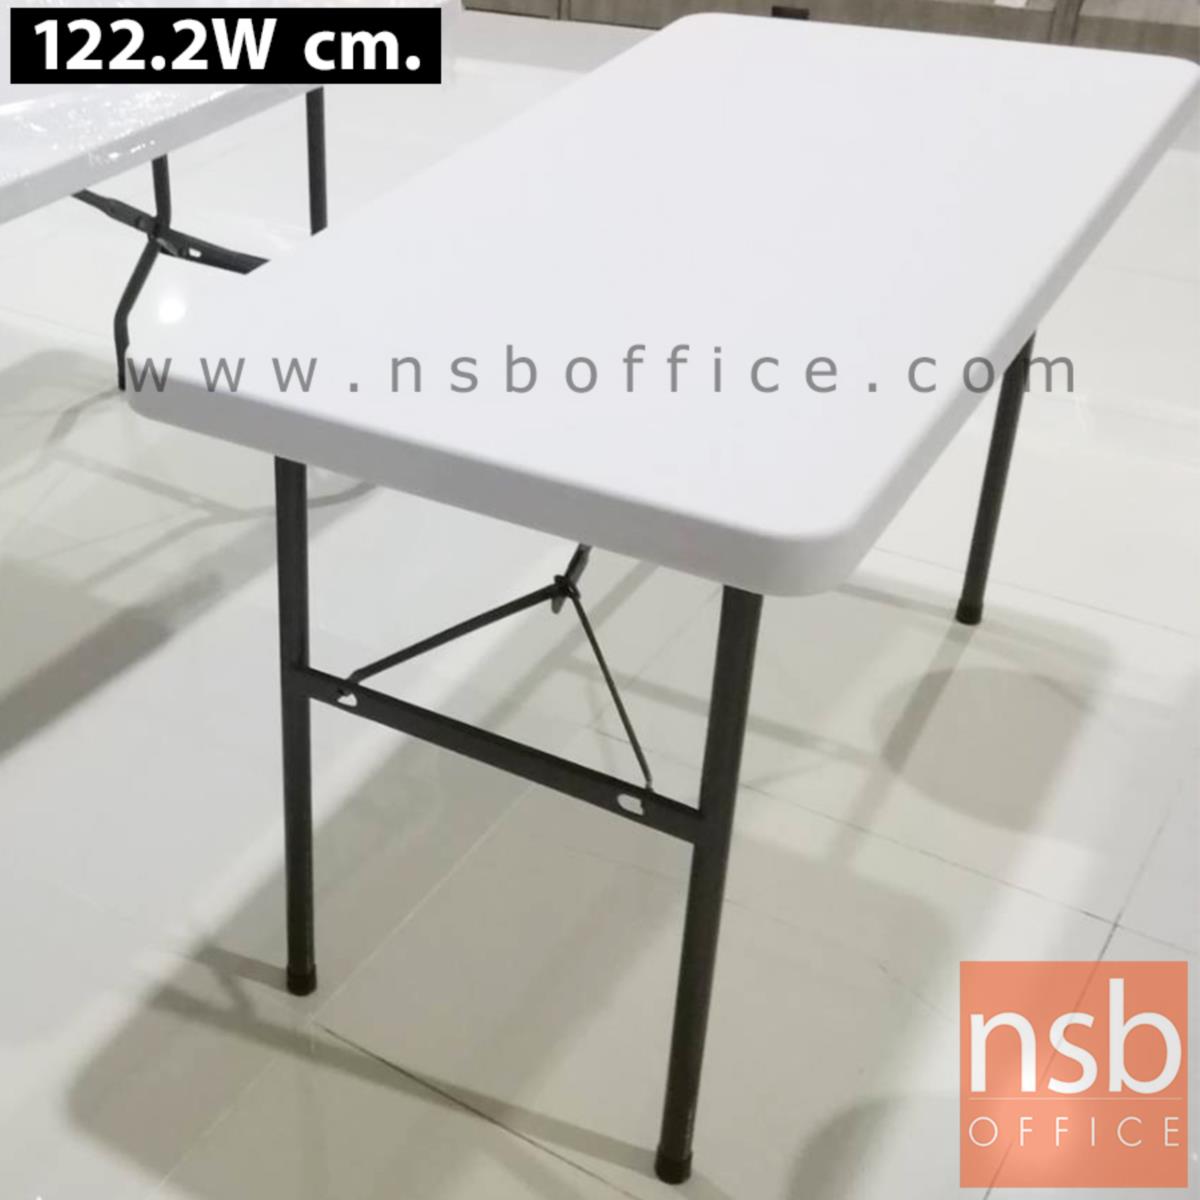 โต๊ะพับหน้าพลาสติก รุ่น Colossal (โคลอซซอล) ขนาด 122.2W, 150W, 180W cm.  ขาอีพ็อกซี่เกล็ดเงิน